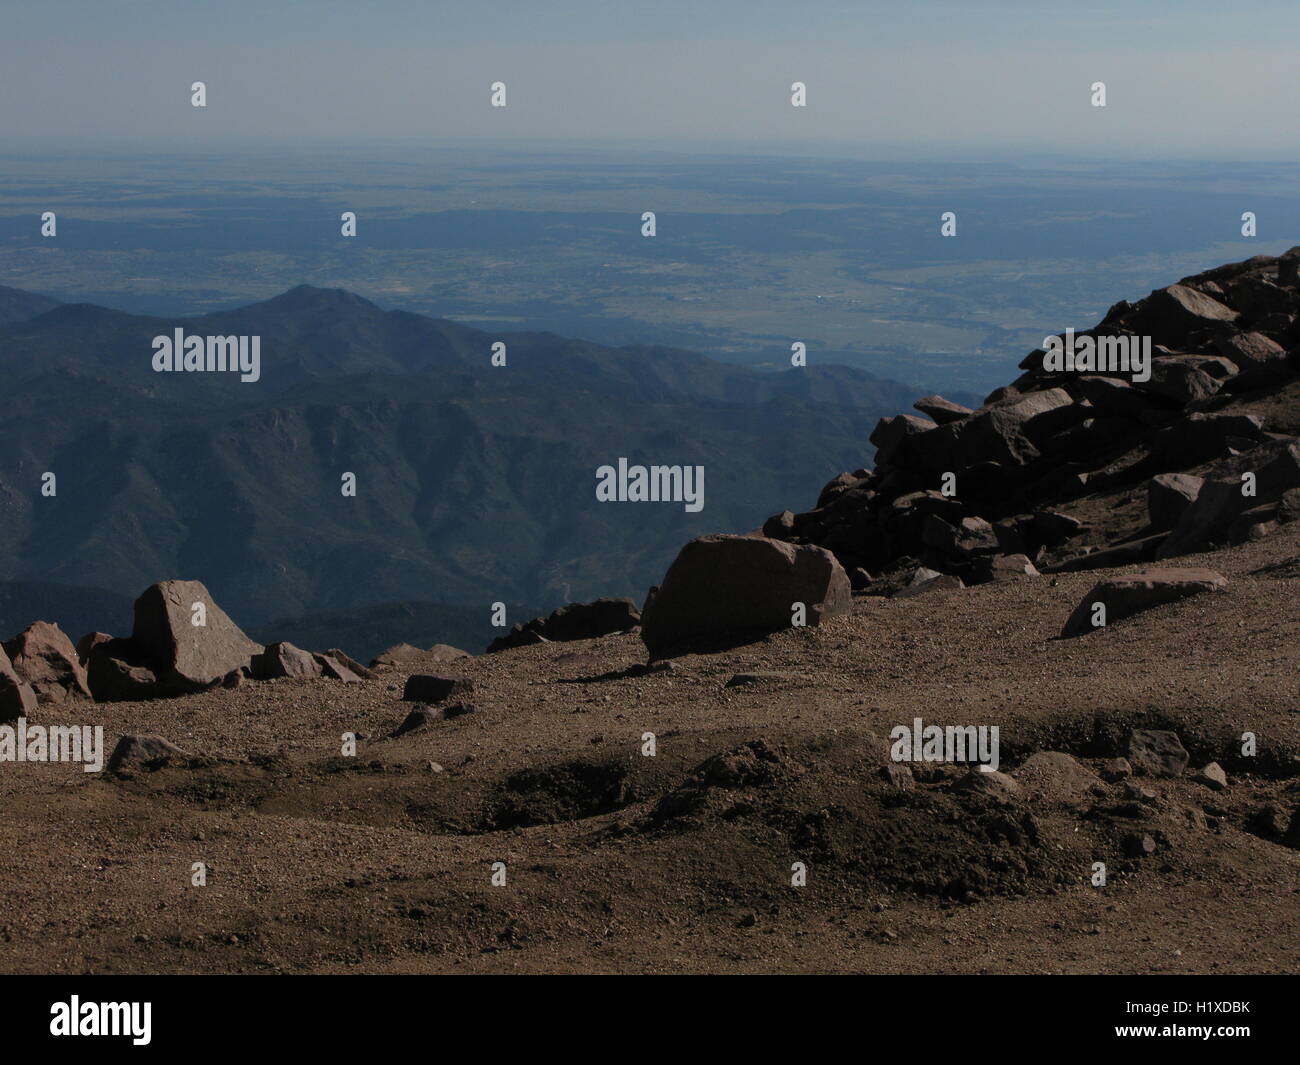 Pikes Peak Summit, Colorado Stock Photo - Alamy